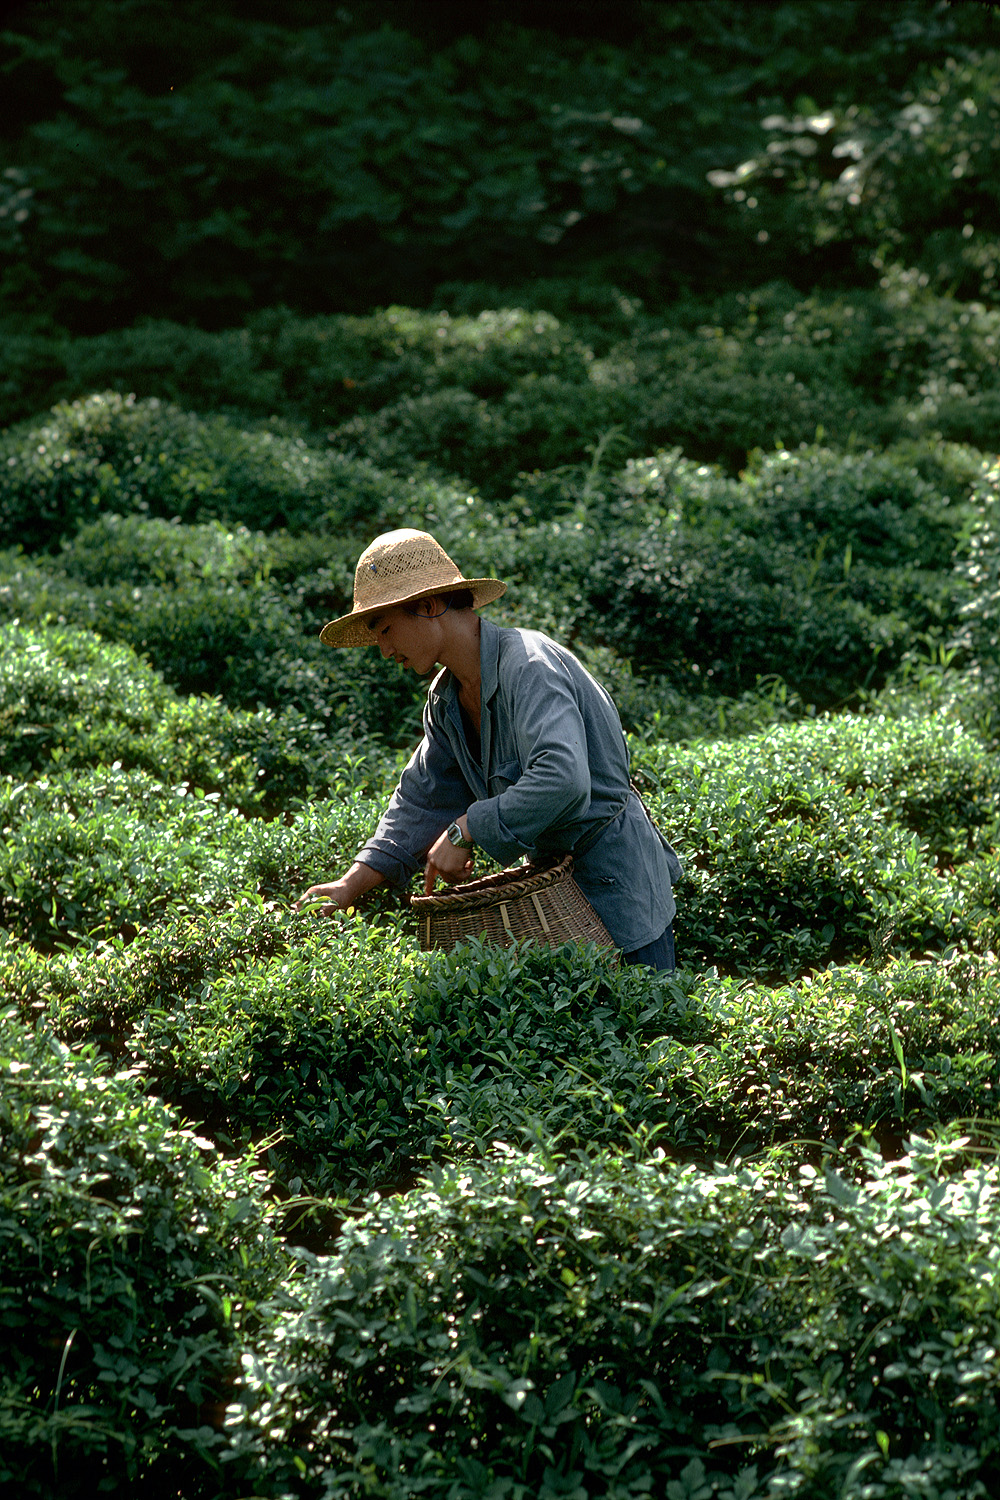 bill-hocker-tea-zhejiang-china-1981